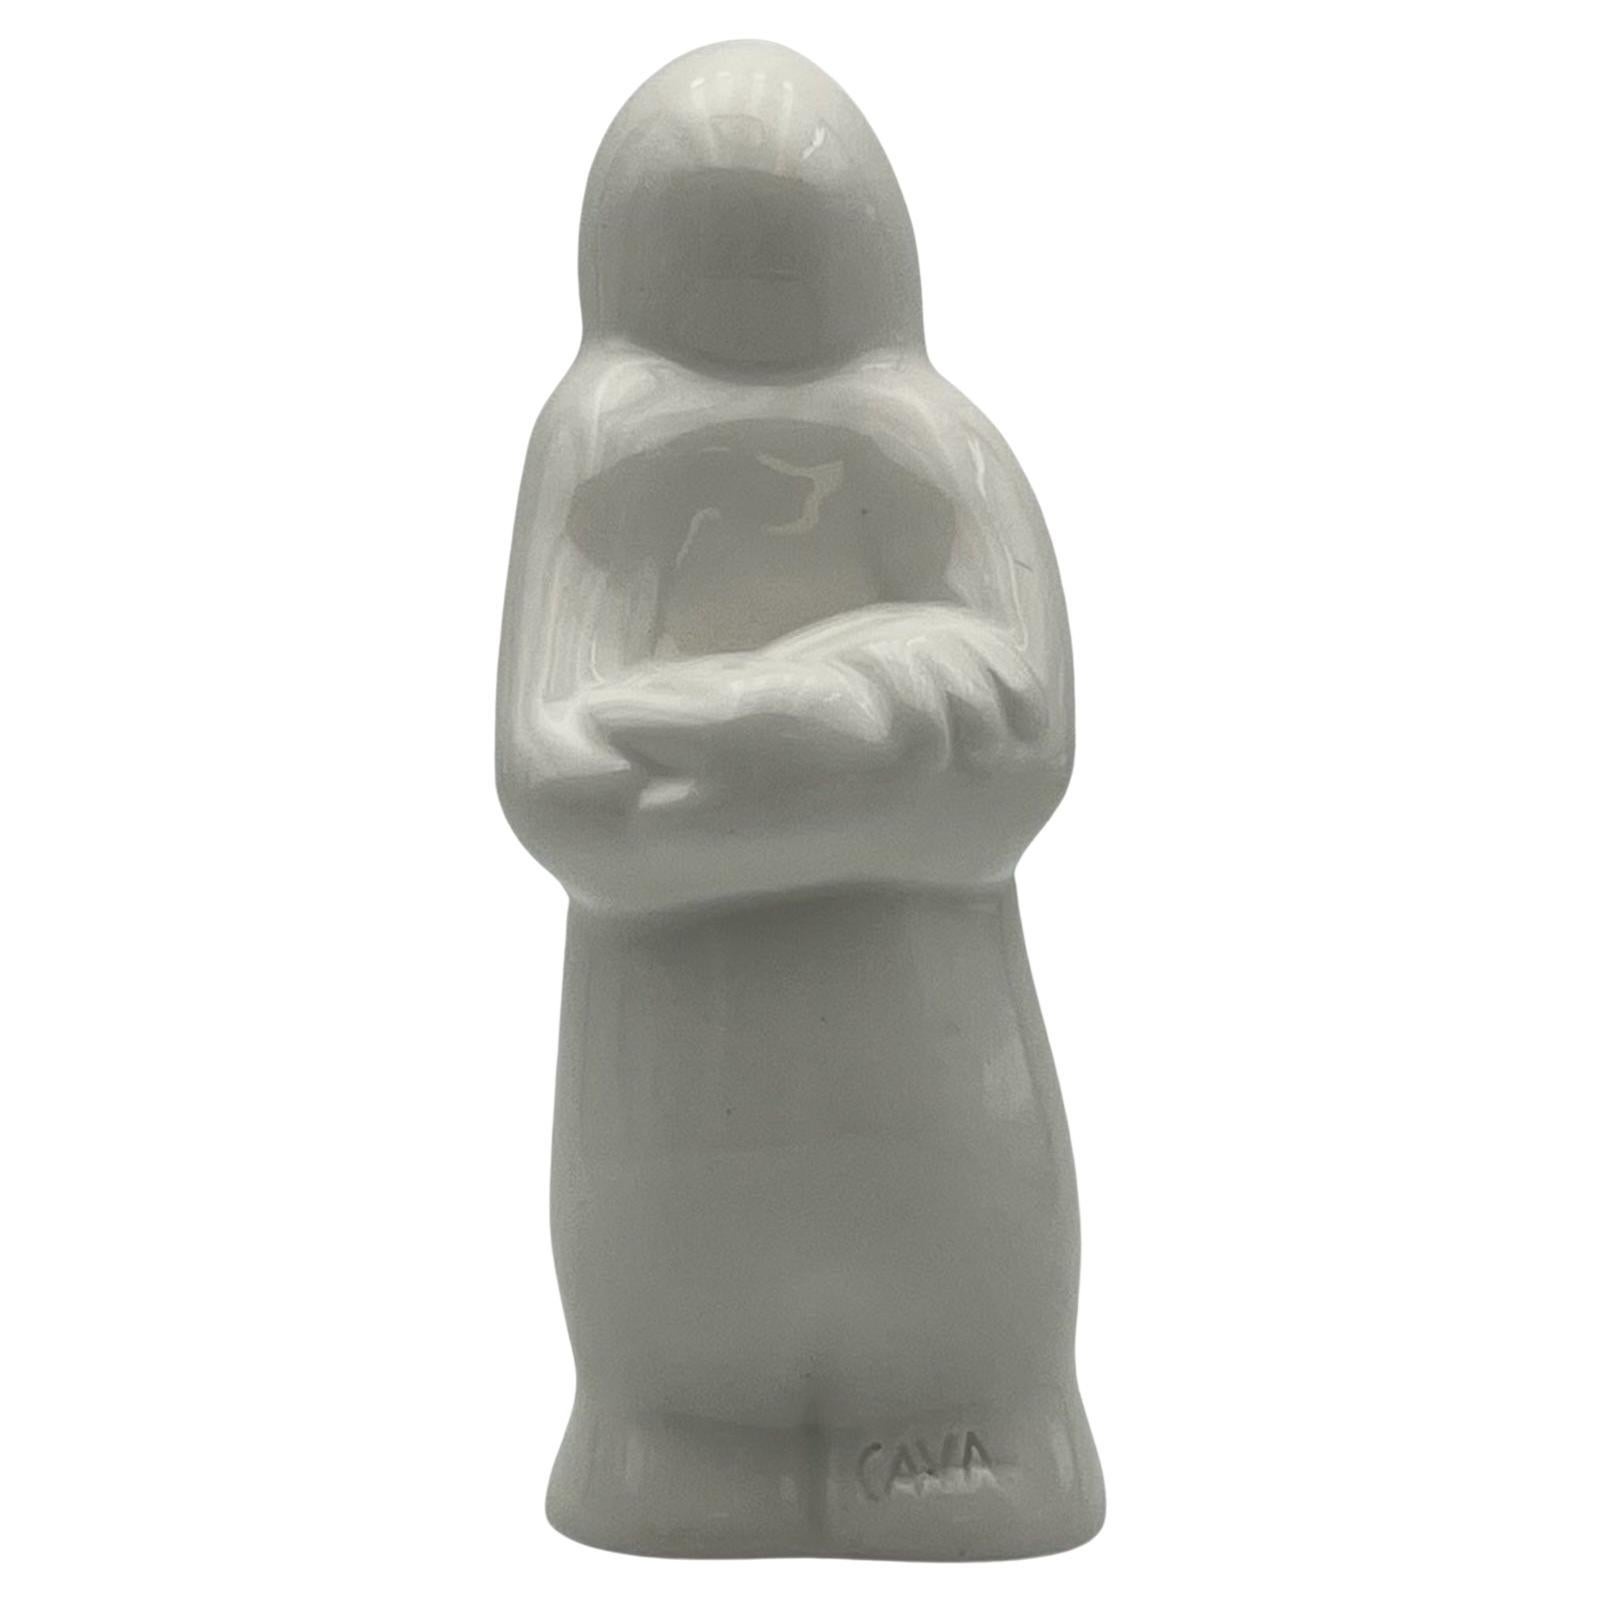 Mid-Century Modern Osvaldo Cavandoli La Linea 'brooding' iconic ceramic figurine - 1960s